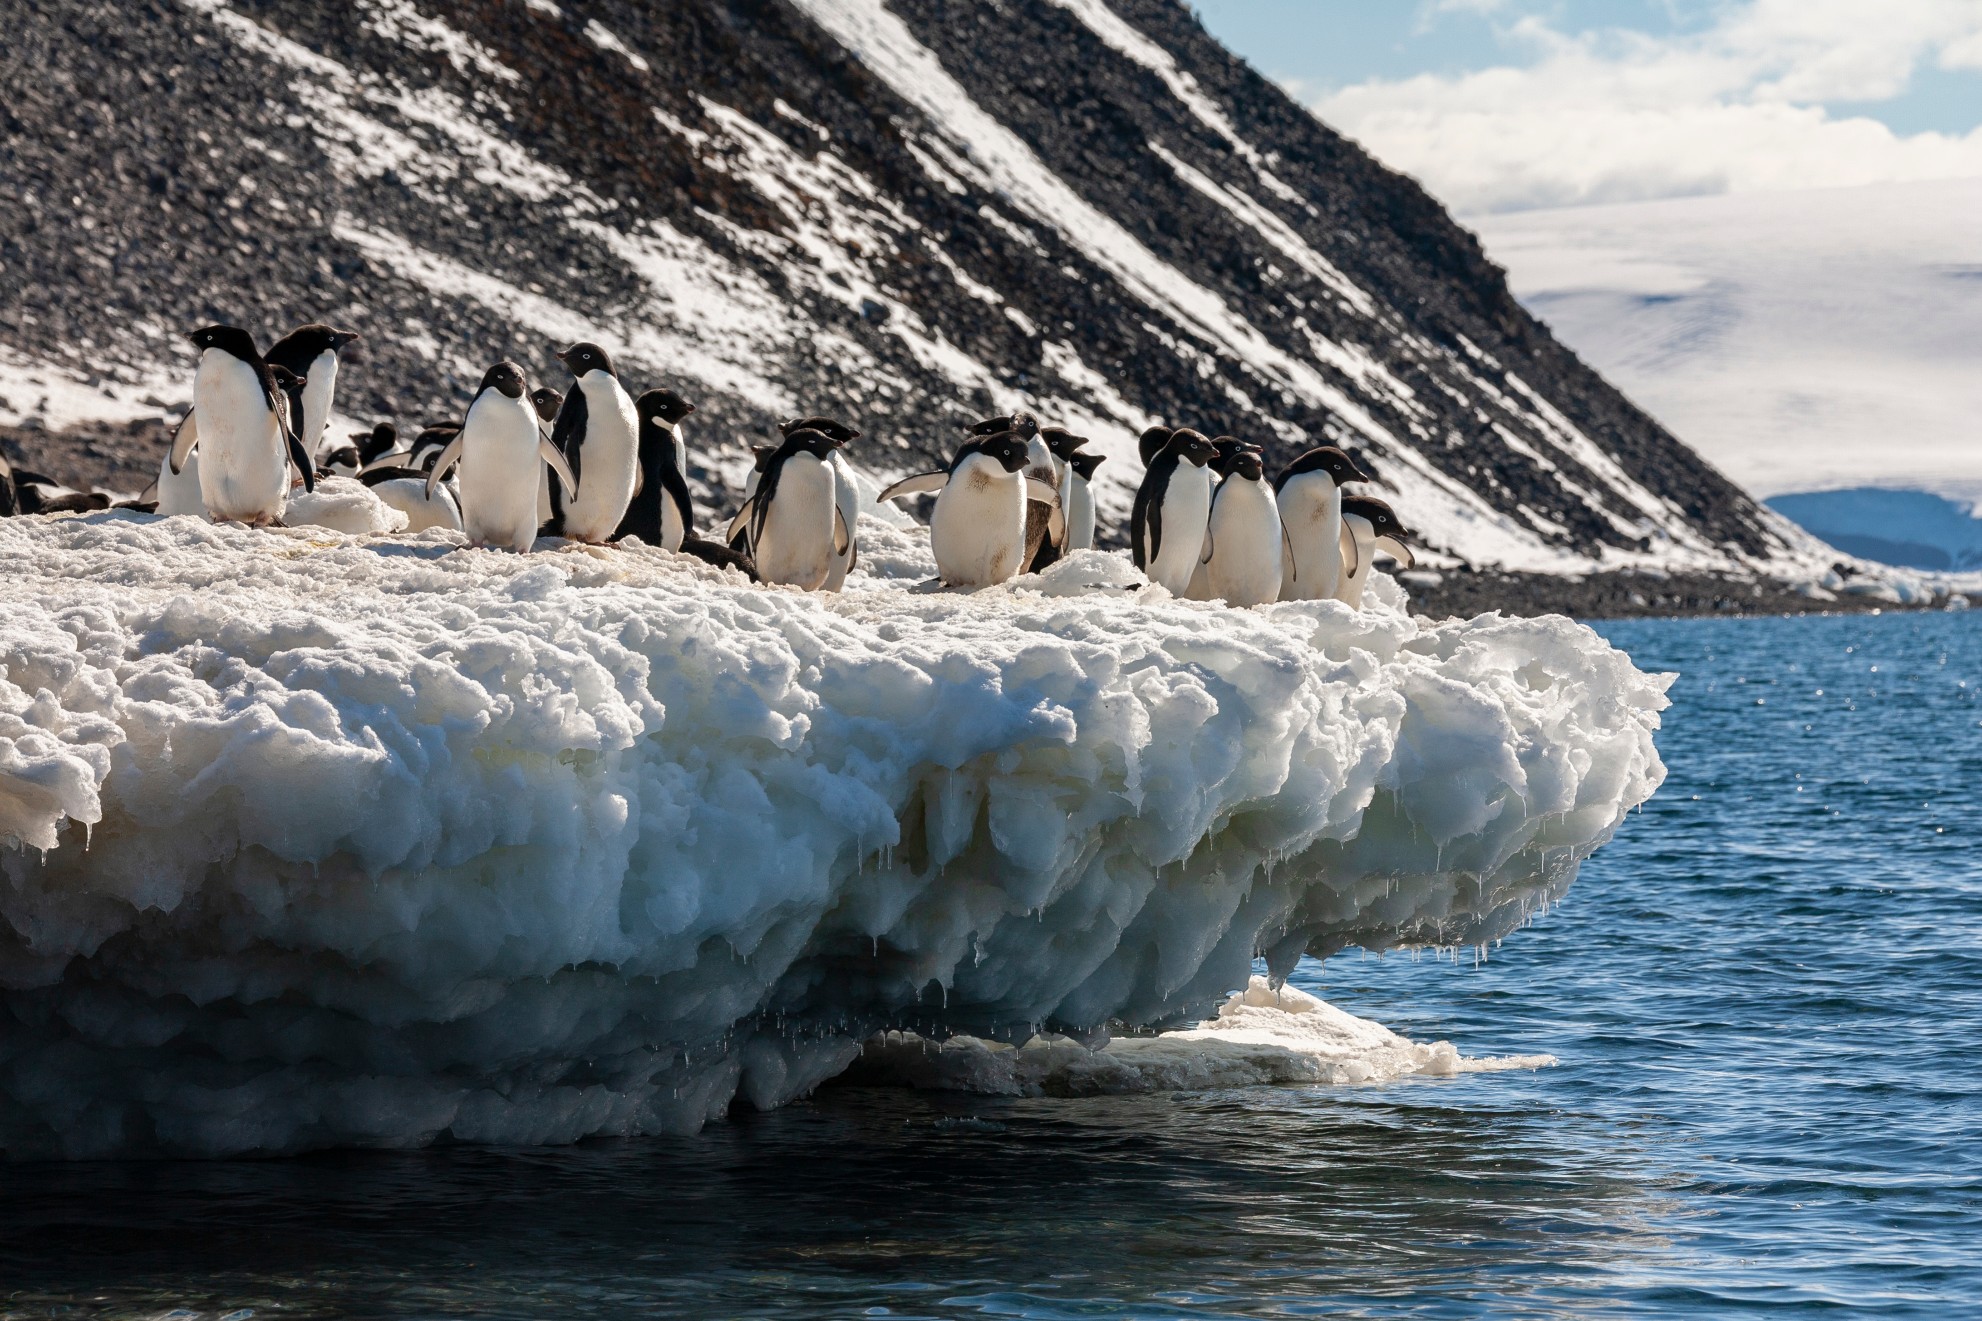 Die Antarktis bietet unvergleichliche Naturschauspiele. Foto: SteveAllenPhoto via Twenty20